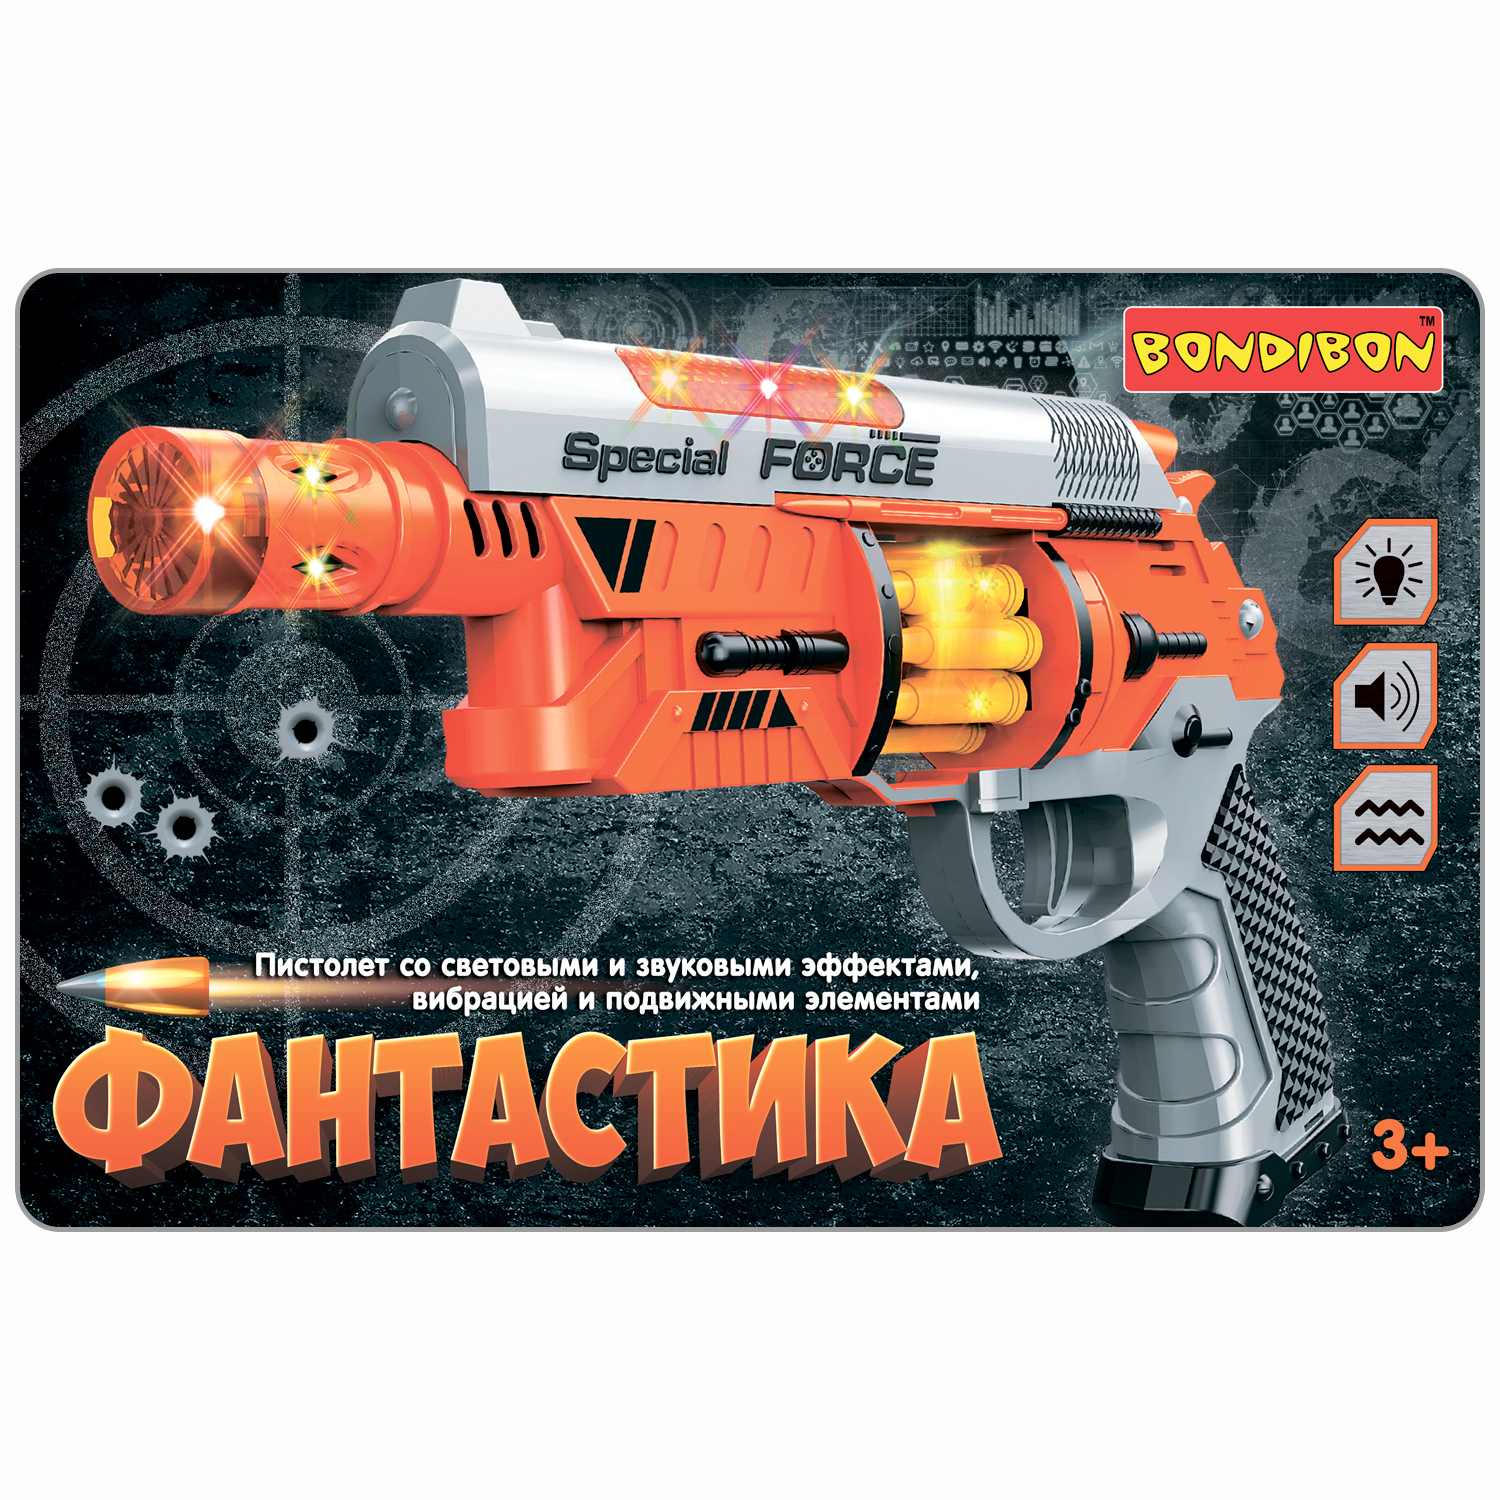 Пистолет BONDIBON Фантастика со свето-звуковым эффектом и подвижными элементами серебристо-оранжевого цвета - фото 2